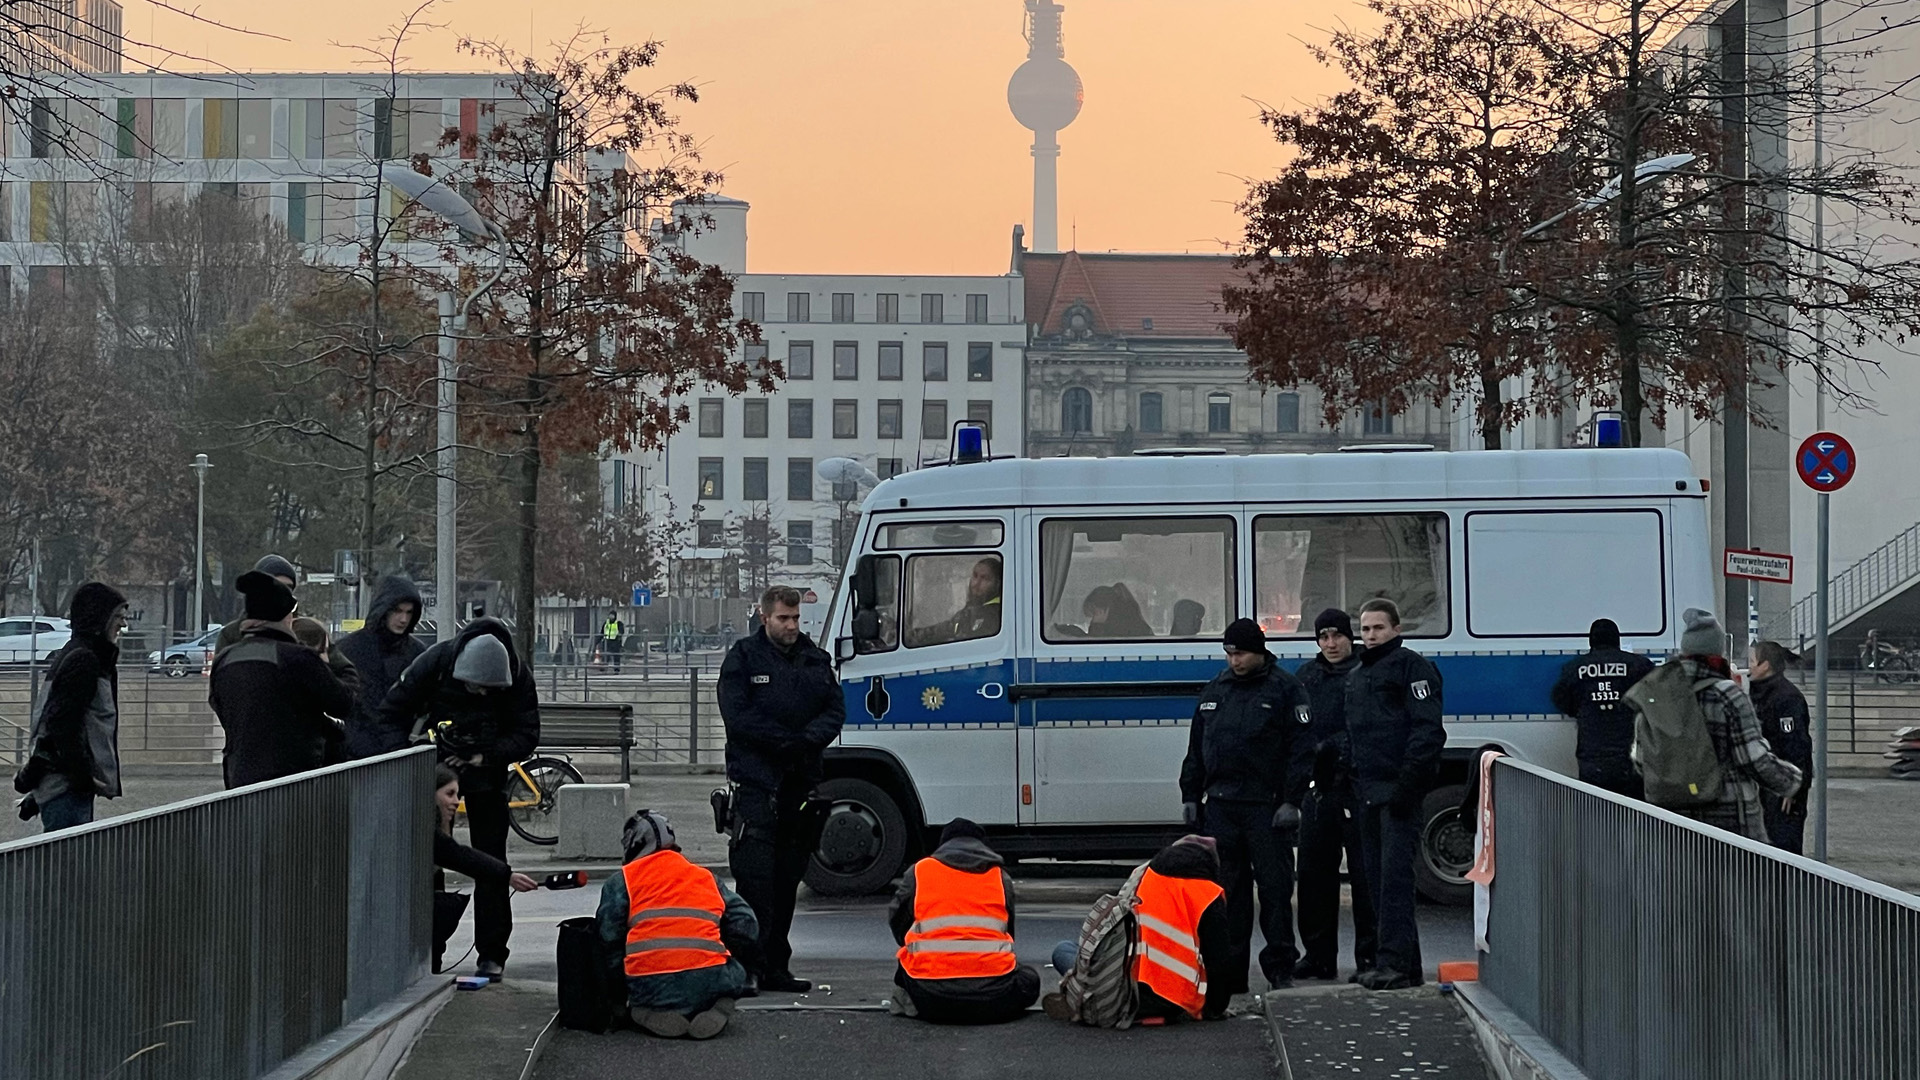 Die Klimaschutzgruppe "Letzte Generation" blockiert am frühen Morgen eine Zufahrt zur Tiefgarage des Bundestages. | dpa